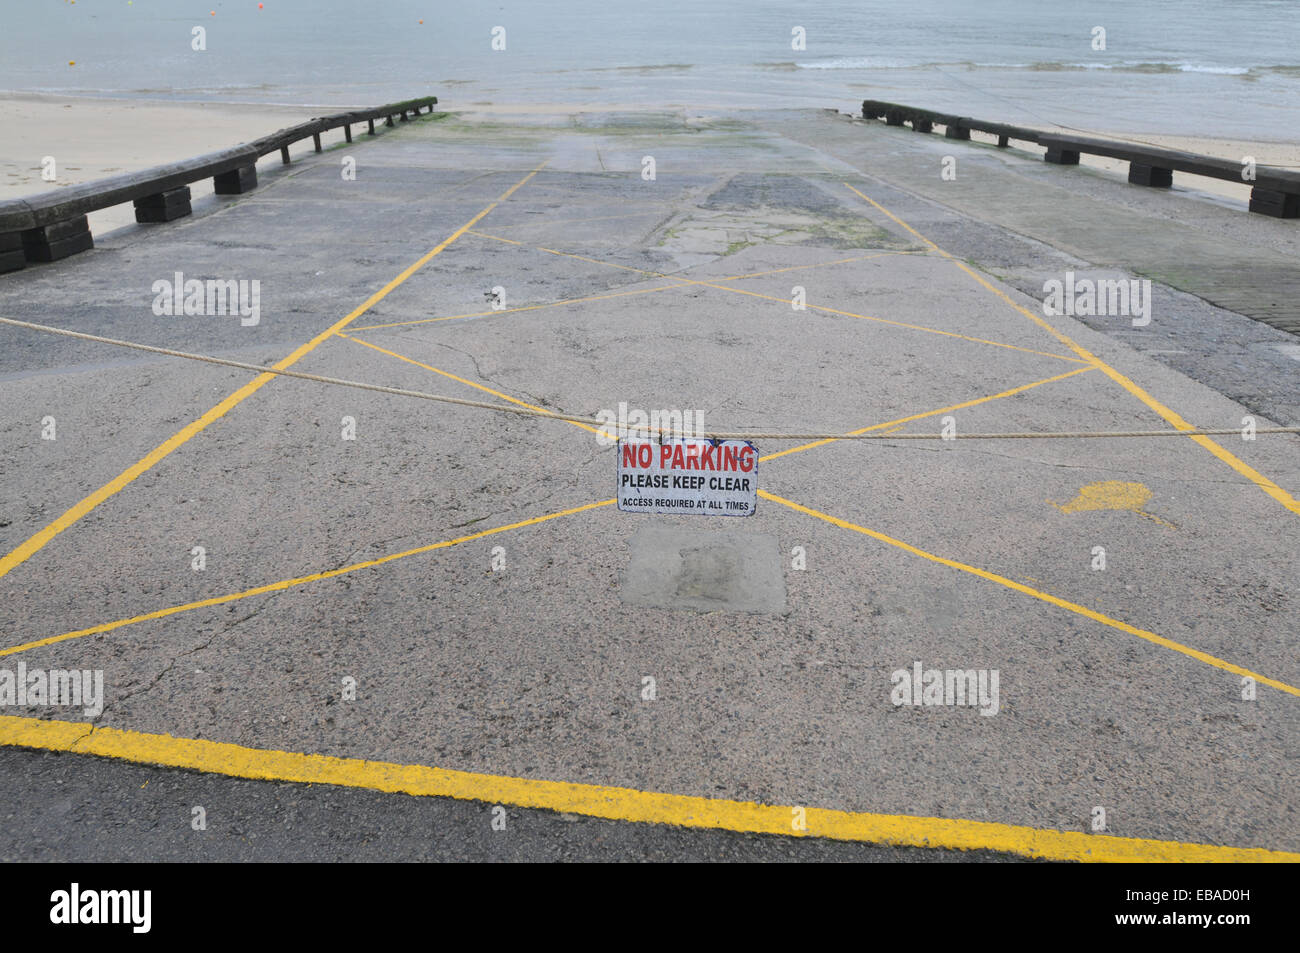 No parking sign sur cale à la mer Banque D'Images